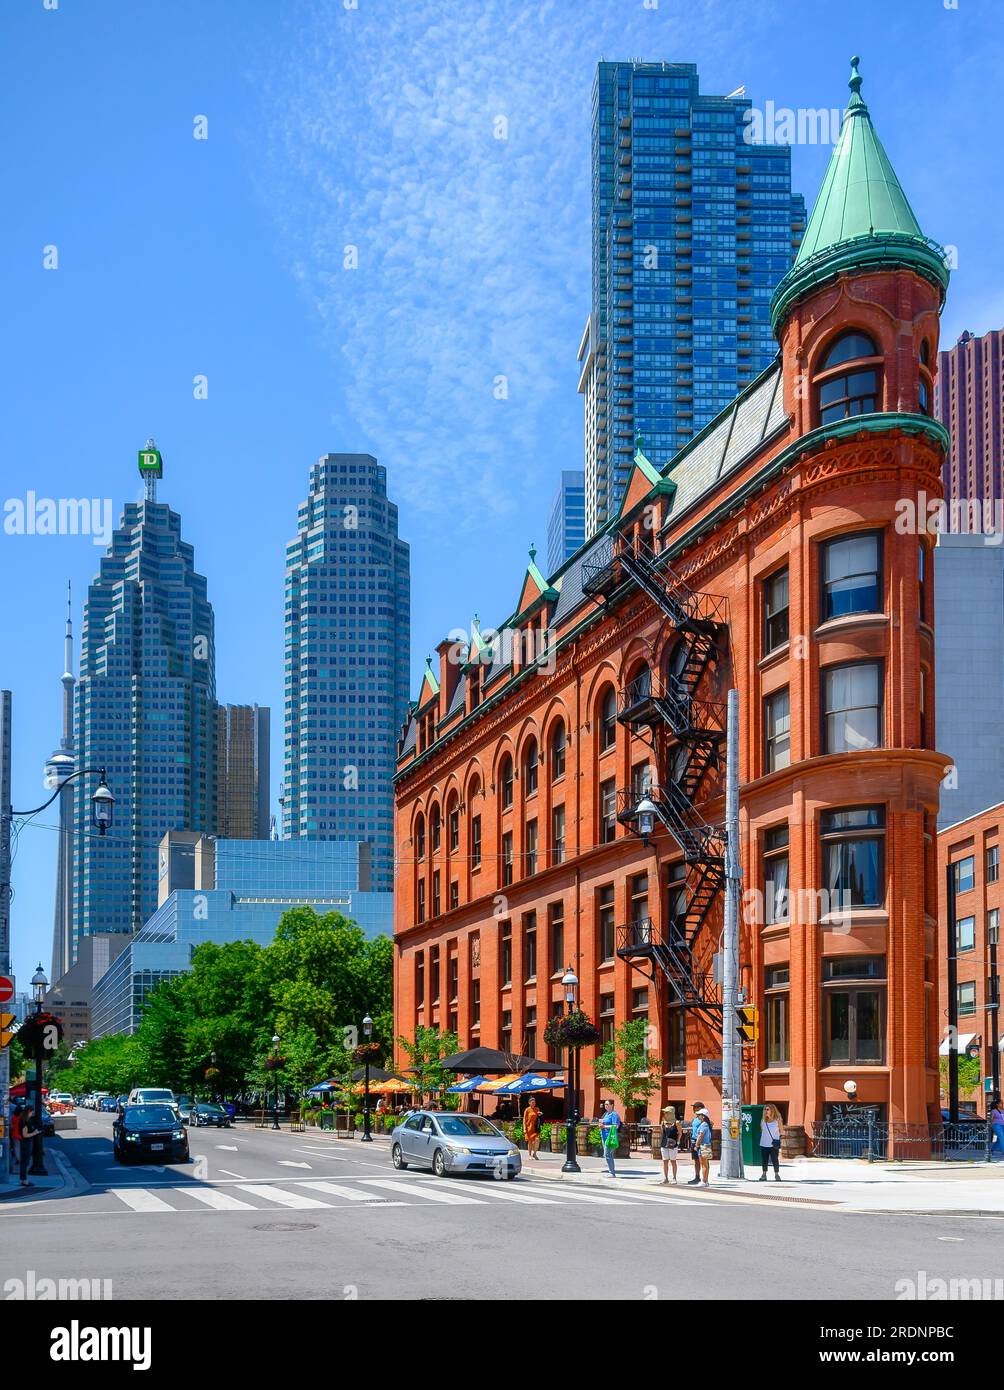 Toronto, Canada - 19 juillet 2023 : extérieur du bâtiment Gooderham. Les bâtiments modernes de gratte-ciel du dsitrict financier sont au loin Banque D'Images